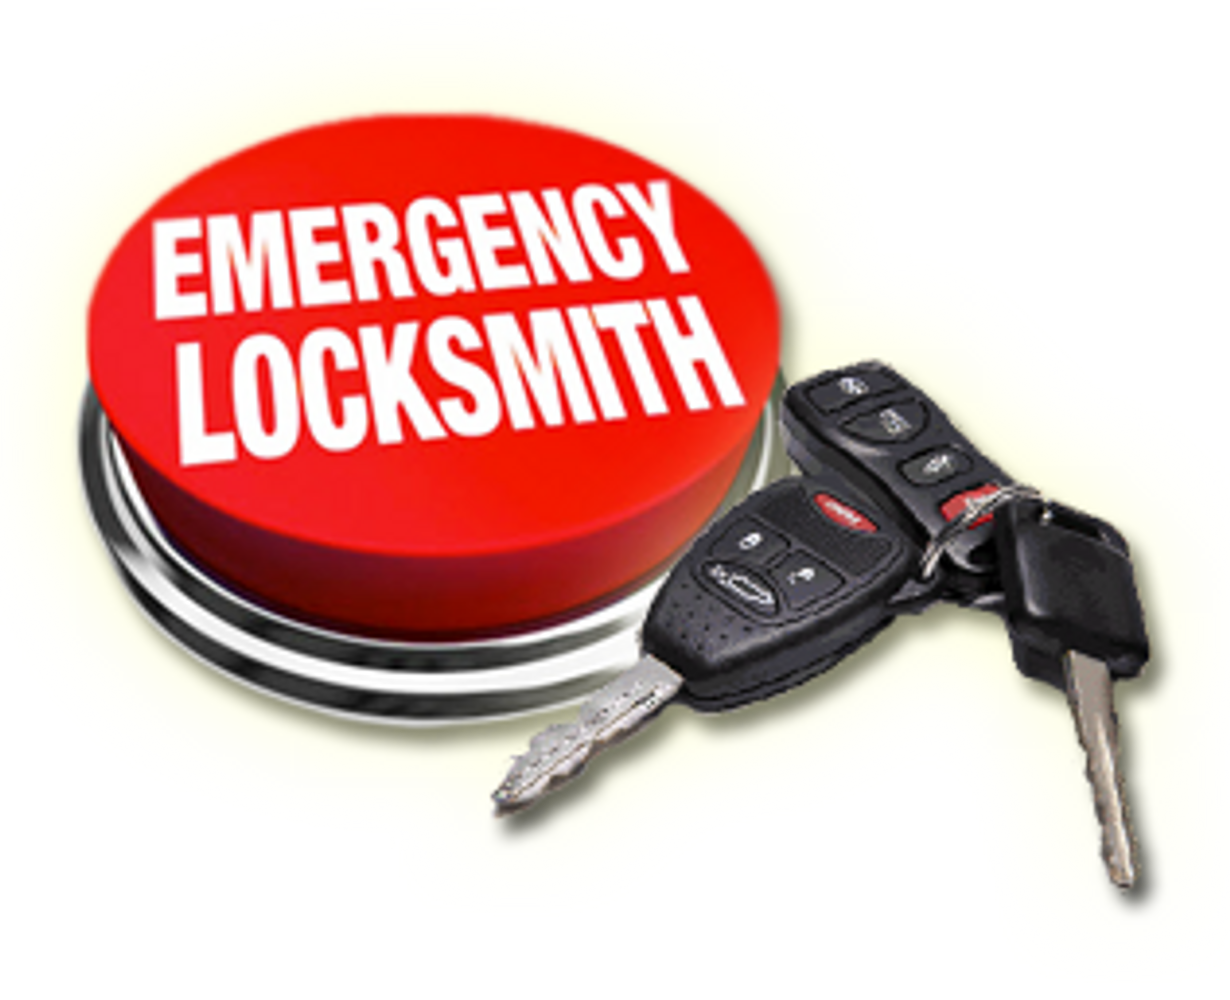 Locksmith
Locksmith near me
Locksmith Philadelphia
Locksmith Philly
Philadelphia locksmith
Lost keys